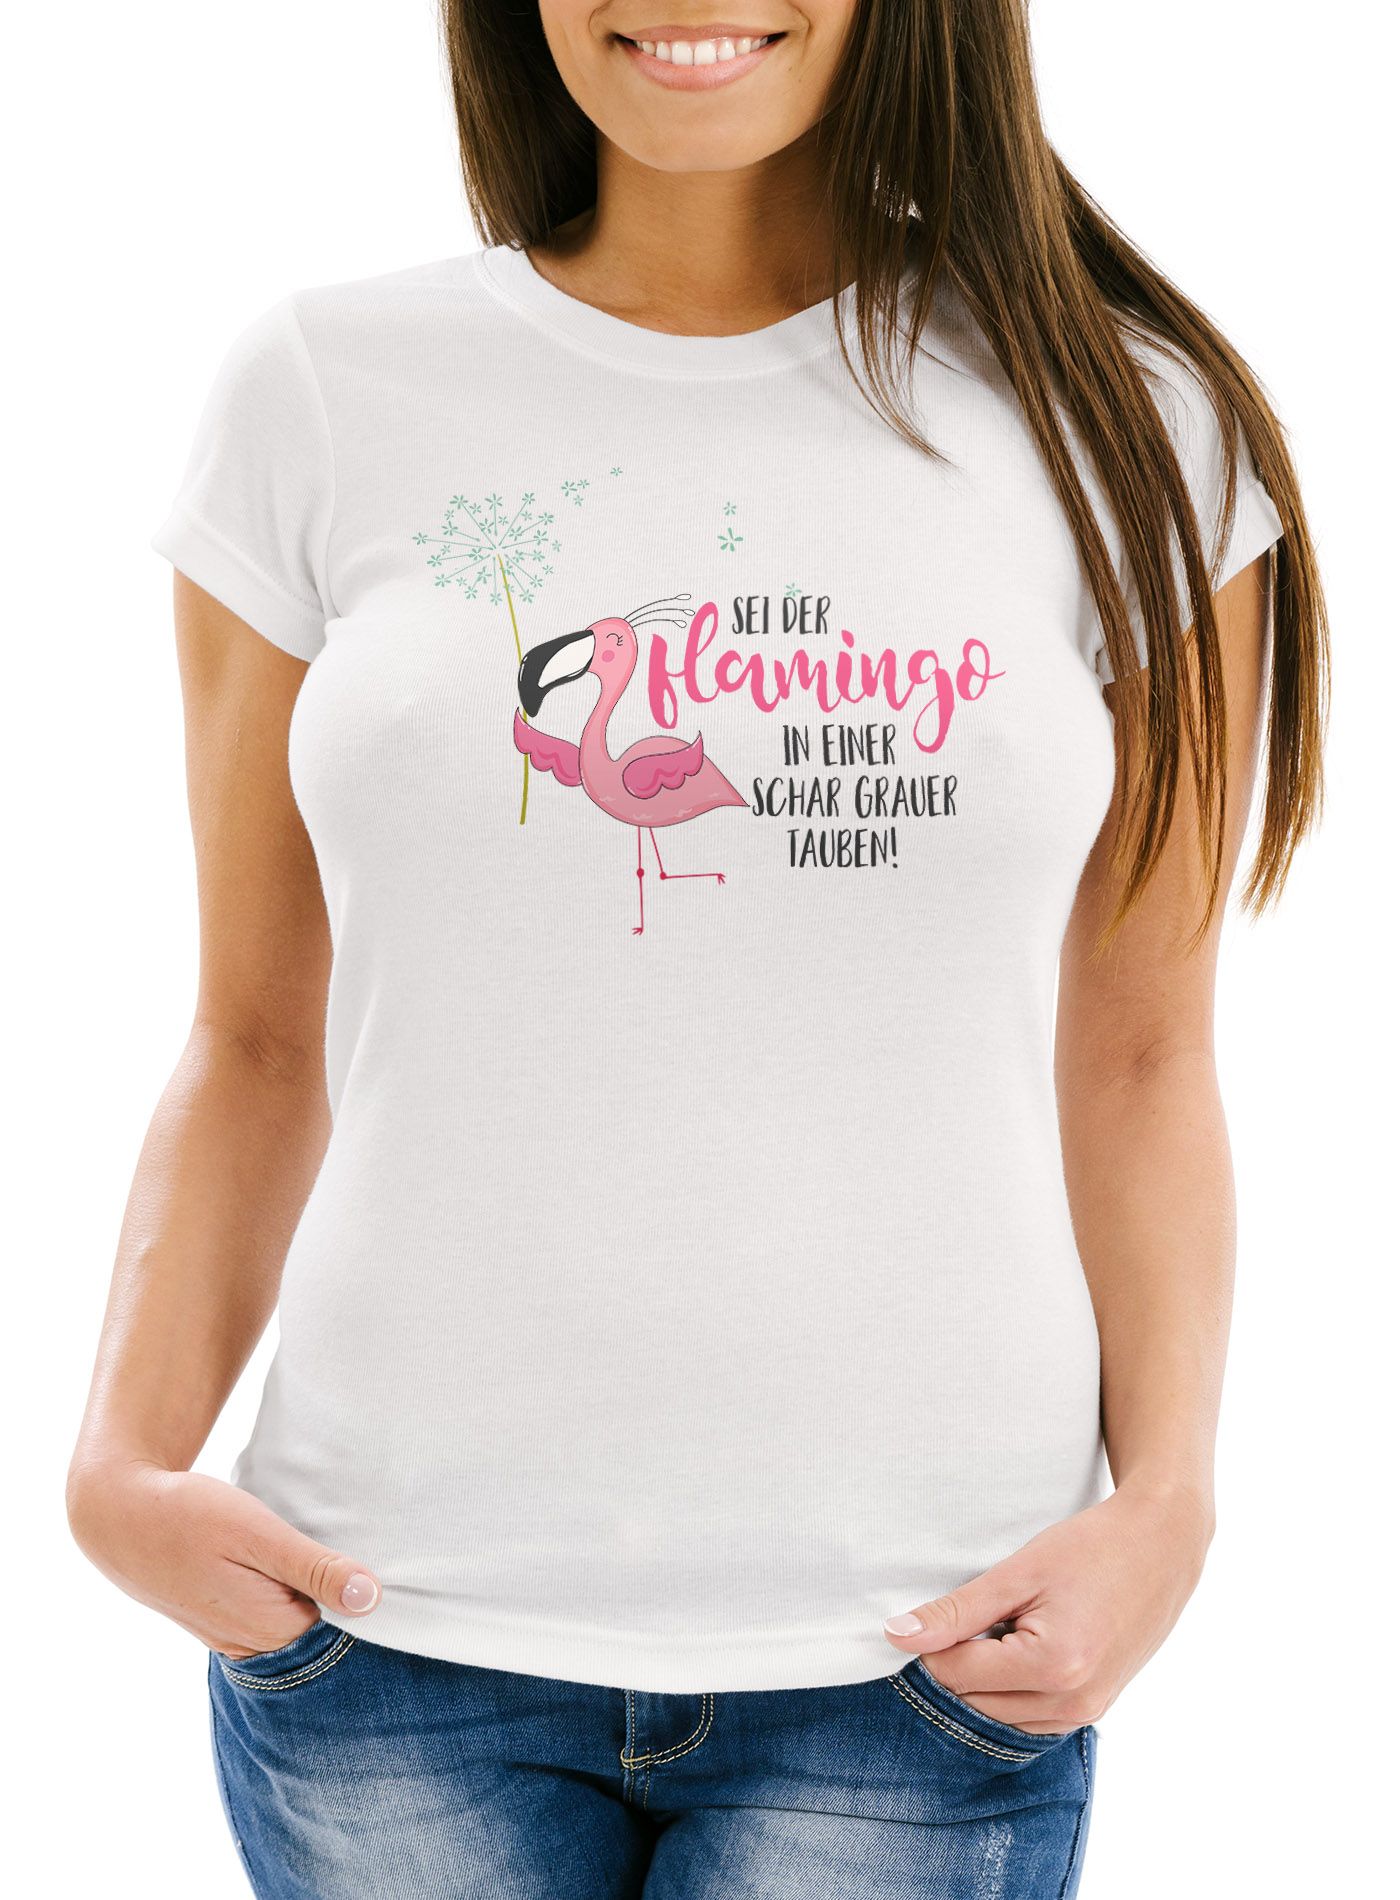 Damen T-Shirt sei der Flamingo in einer Schar grauer Tauben Slim Fit Spruch Flamingo Pusteblume Moonworks®